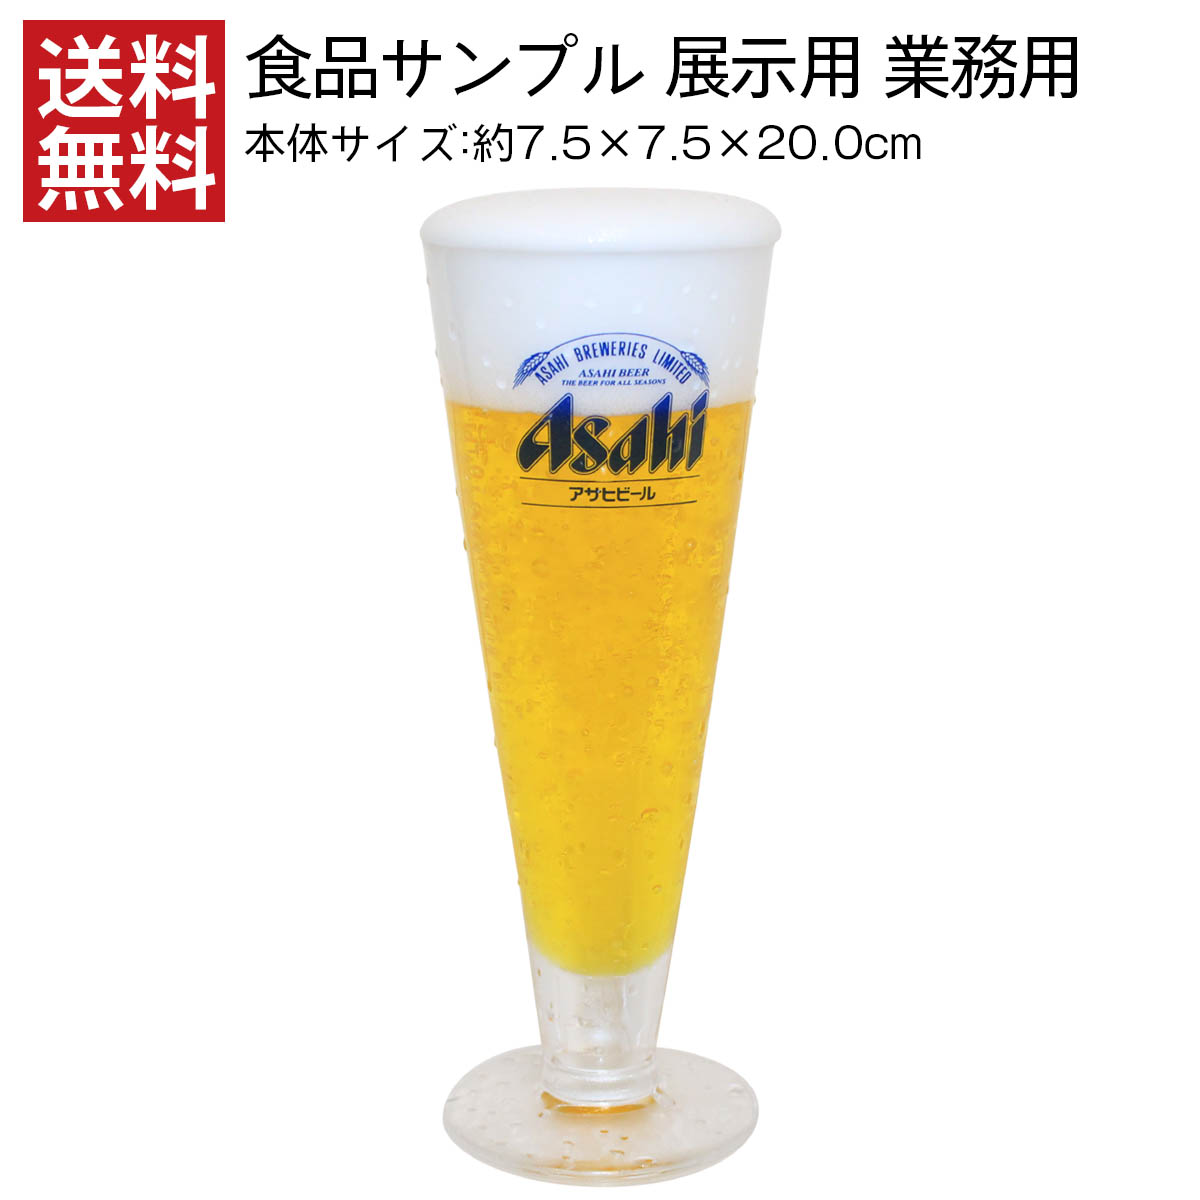 送料無料 食品サンプル 展示用 アサヒ ビール スクーナー 水滴付き 生グラス Asahi 高品質 業務用 プロ用 インテリア オブジェ 店頭用ディスプレイ 業務用食品サンプル お店のショーケースにいかがでしょうか インテリアにも Rentmy1 Com